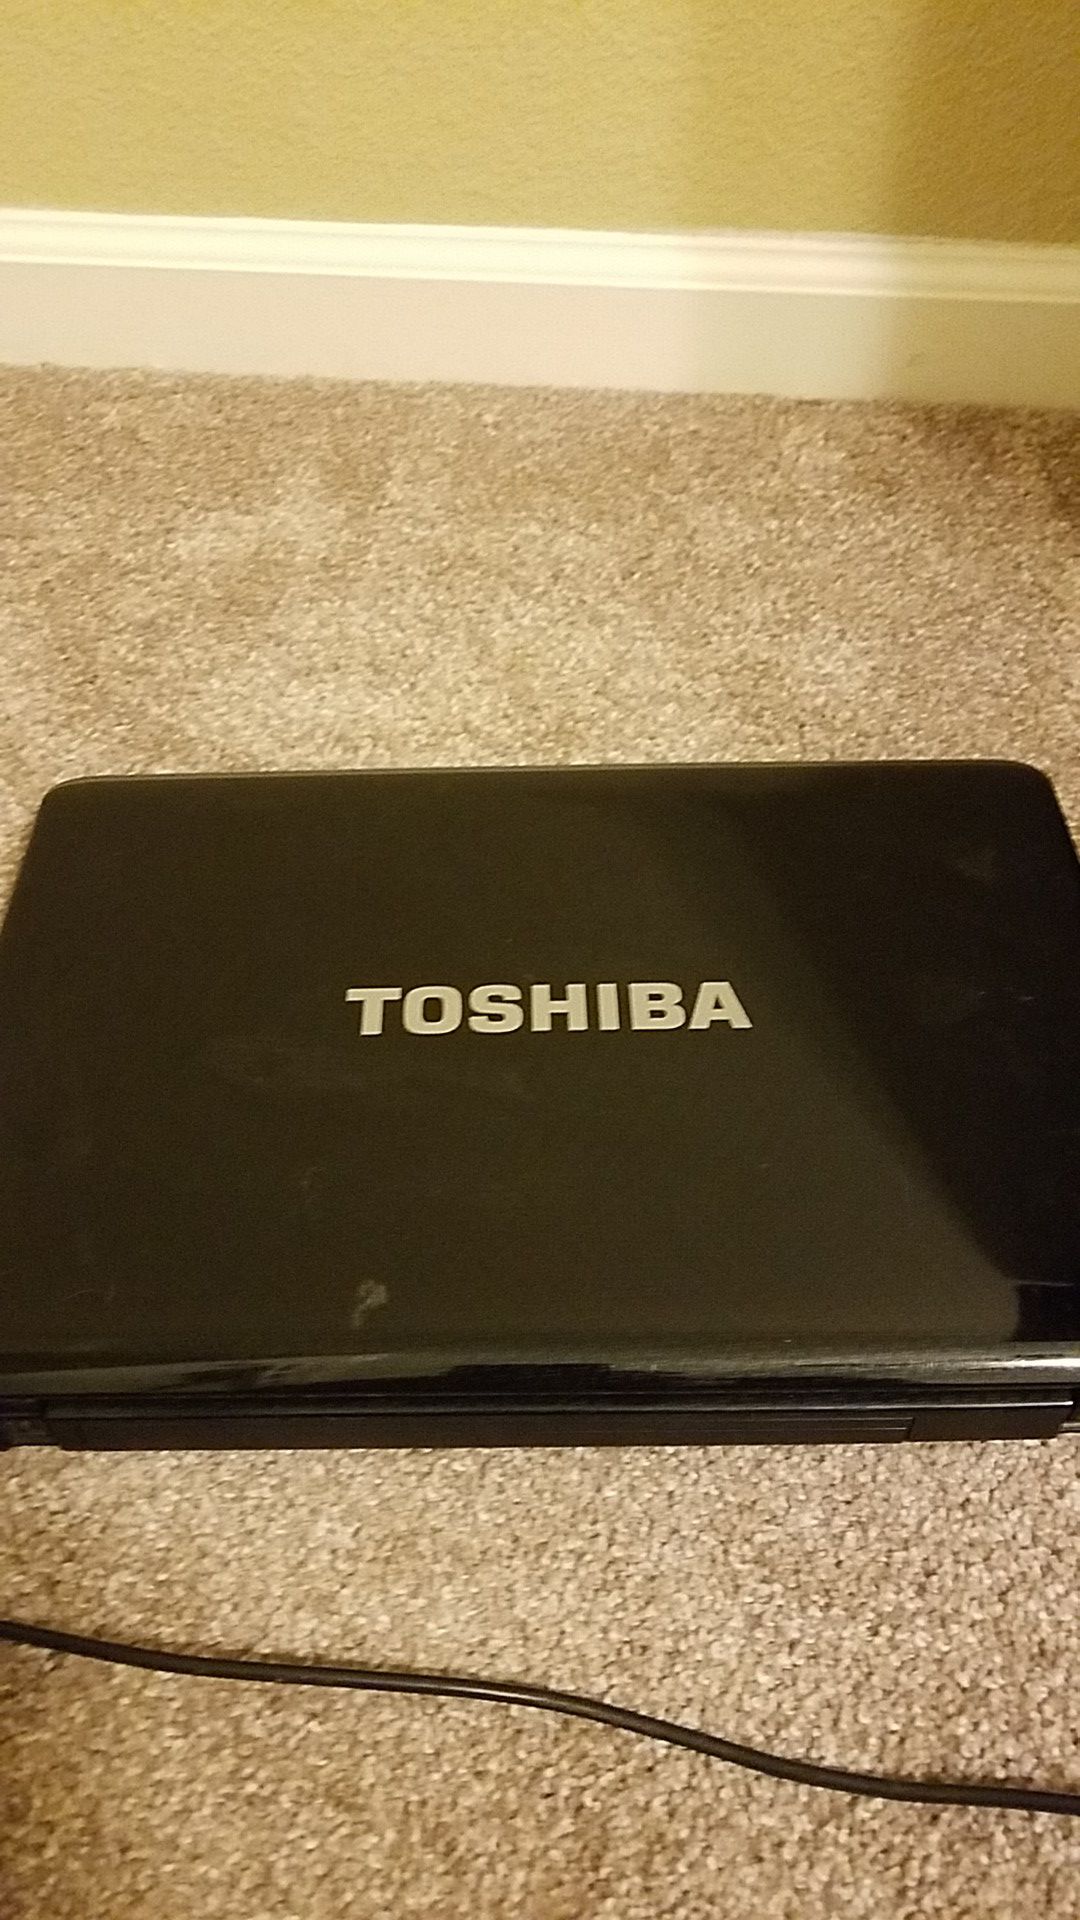 Toshiba Satelite laptop